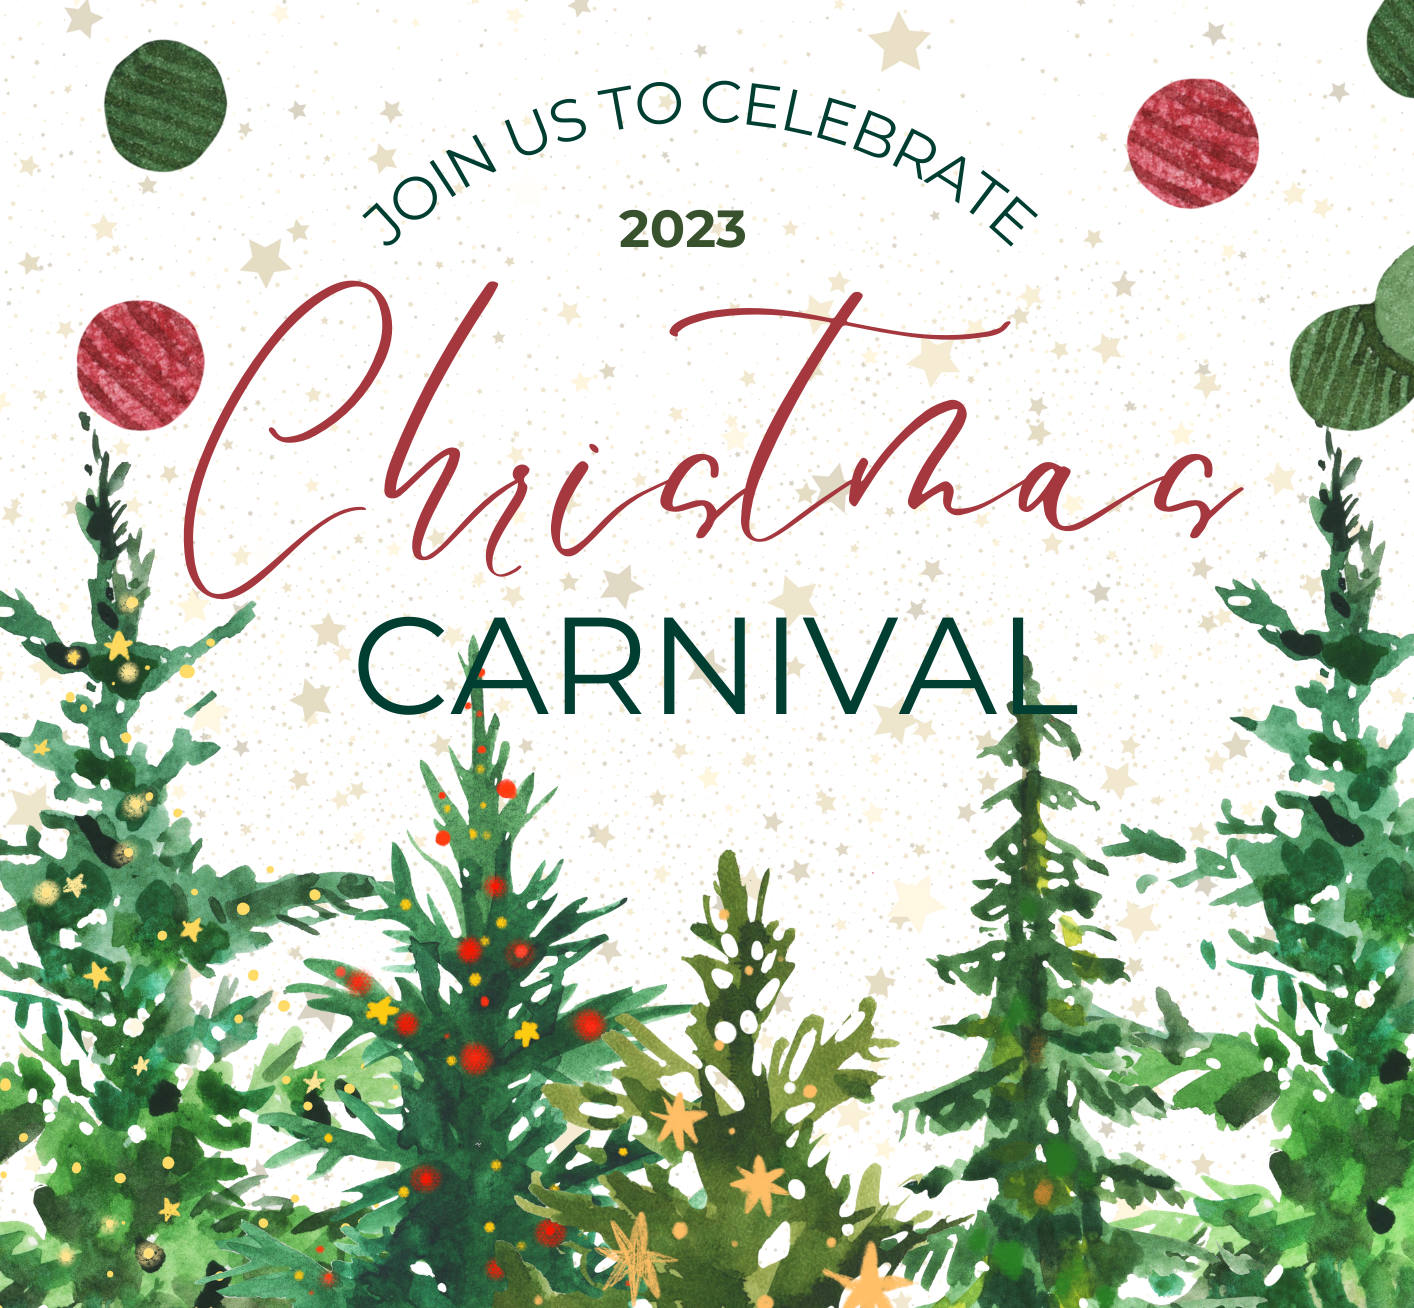 Christmas Carnival 2023 image